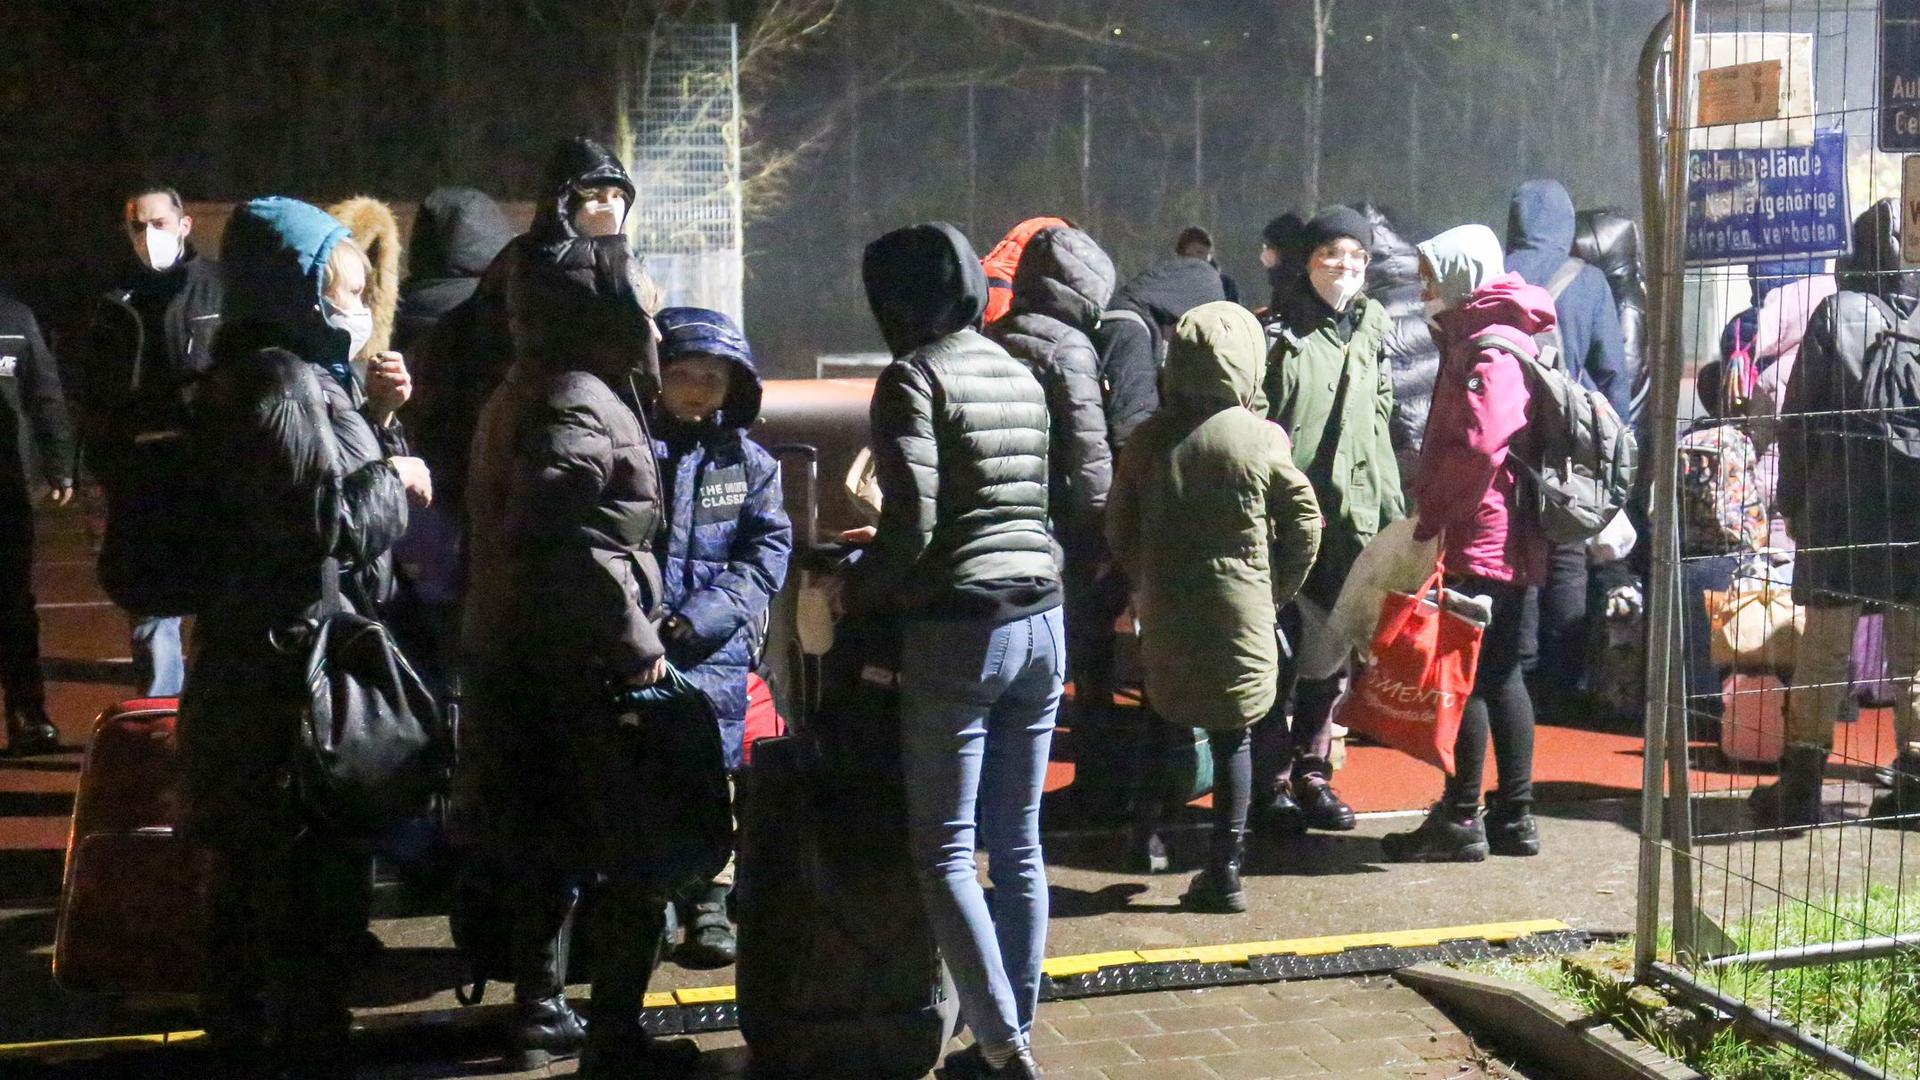 Vor einer Woche kamen die ersten rund 50 Flüchtlingen an, in Kürze soll ein weiterer Bus folgen, kündigte Landrat Bastian Rosenau am Donnerstag an. Die Notunterkunft in Mühlacker hat Kapazitäten für bis zu 128 Menschen. 